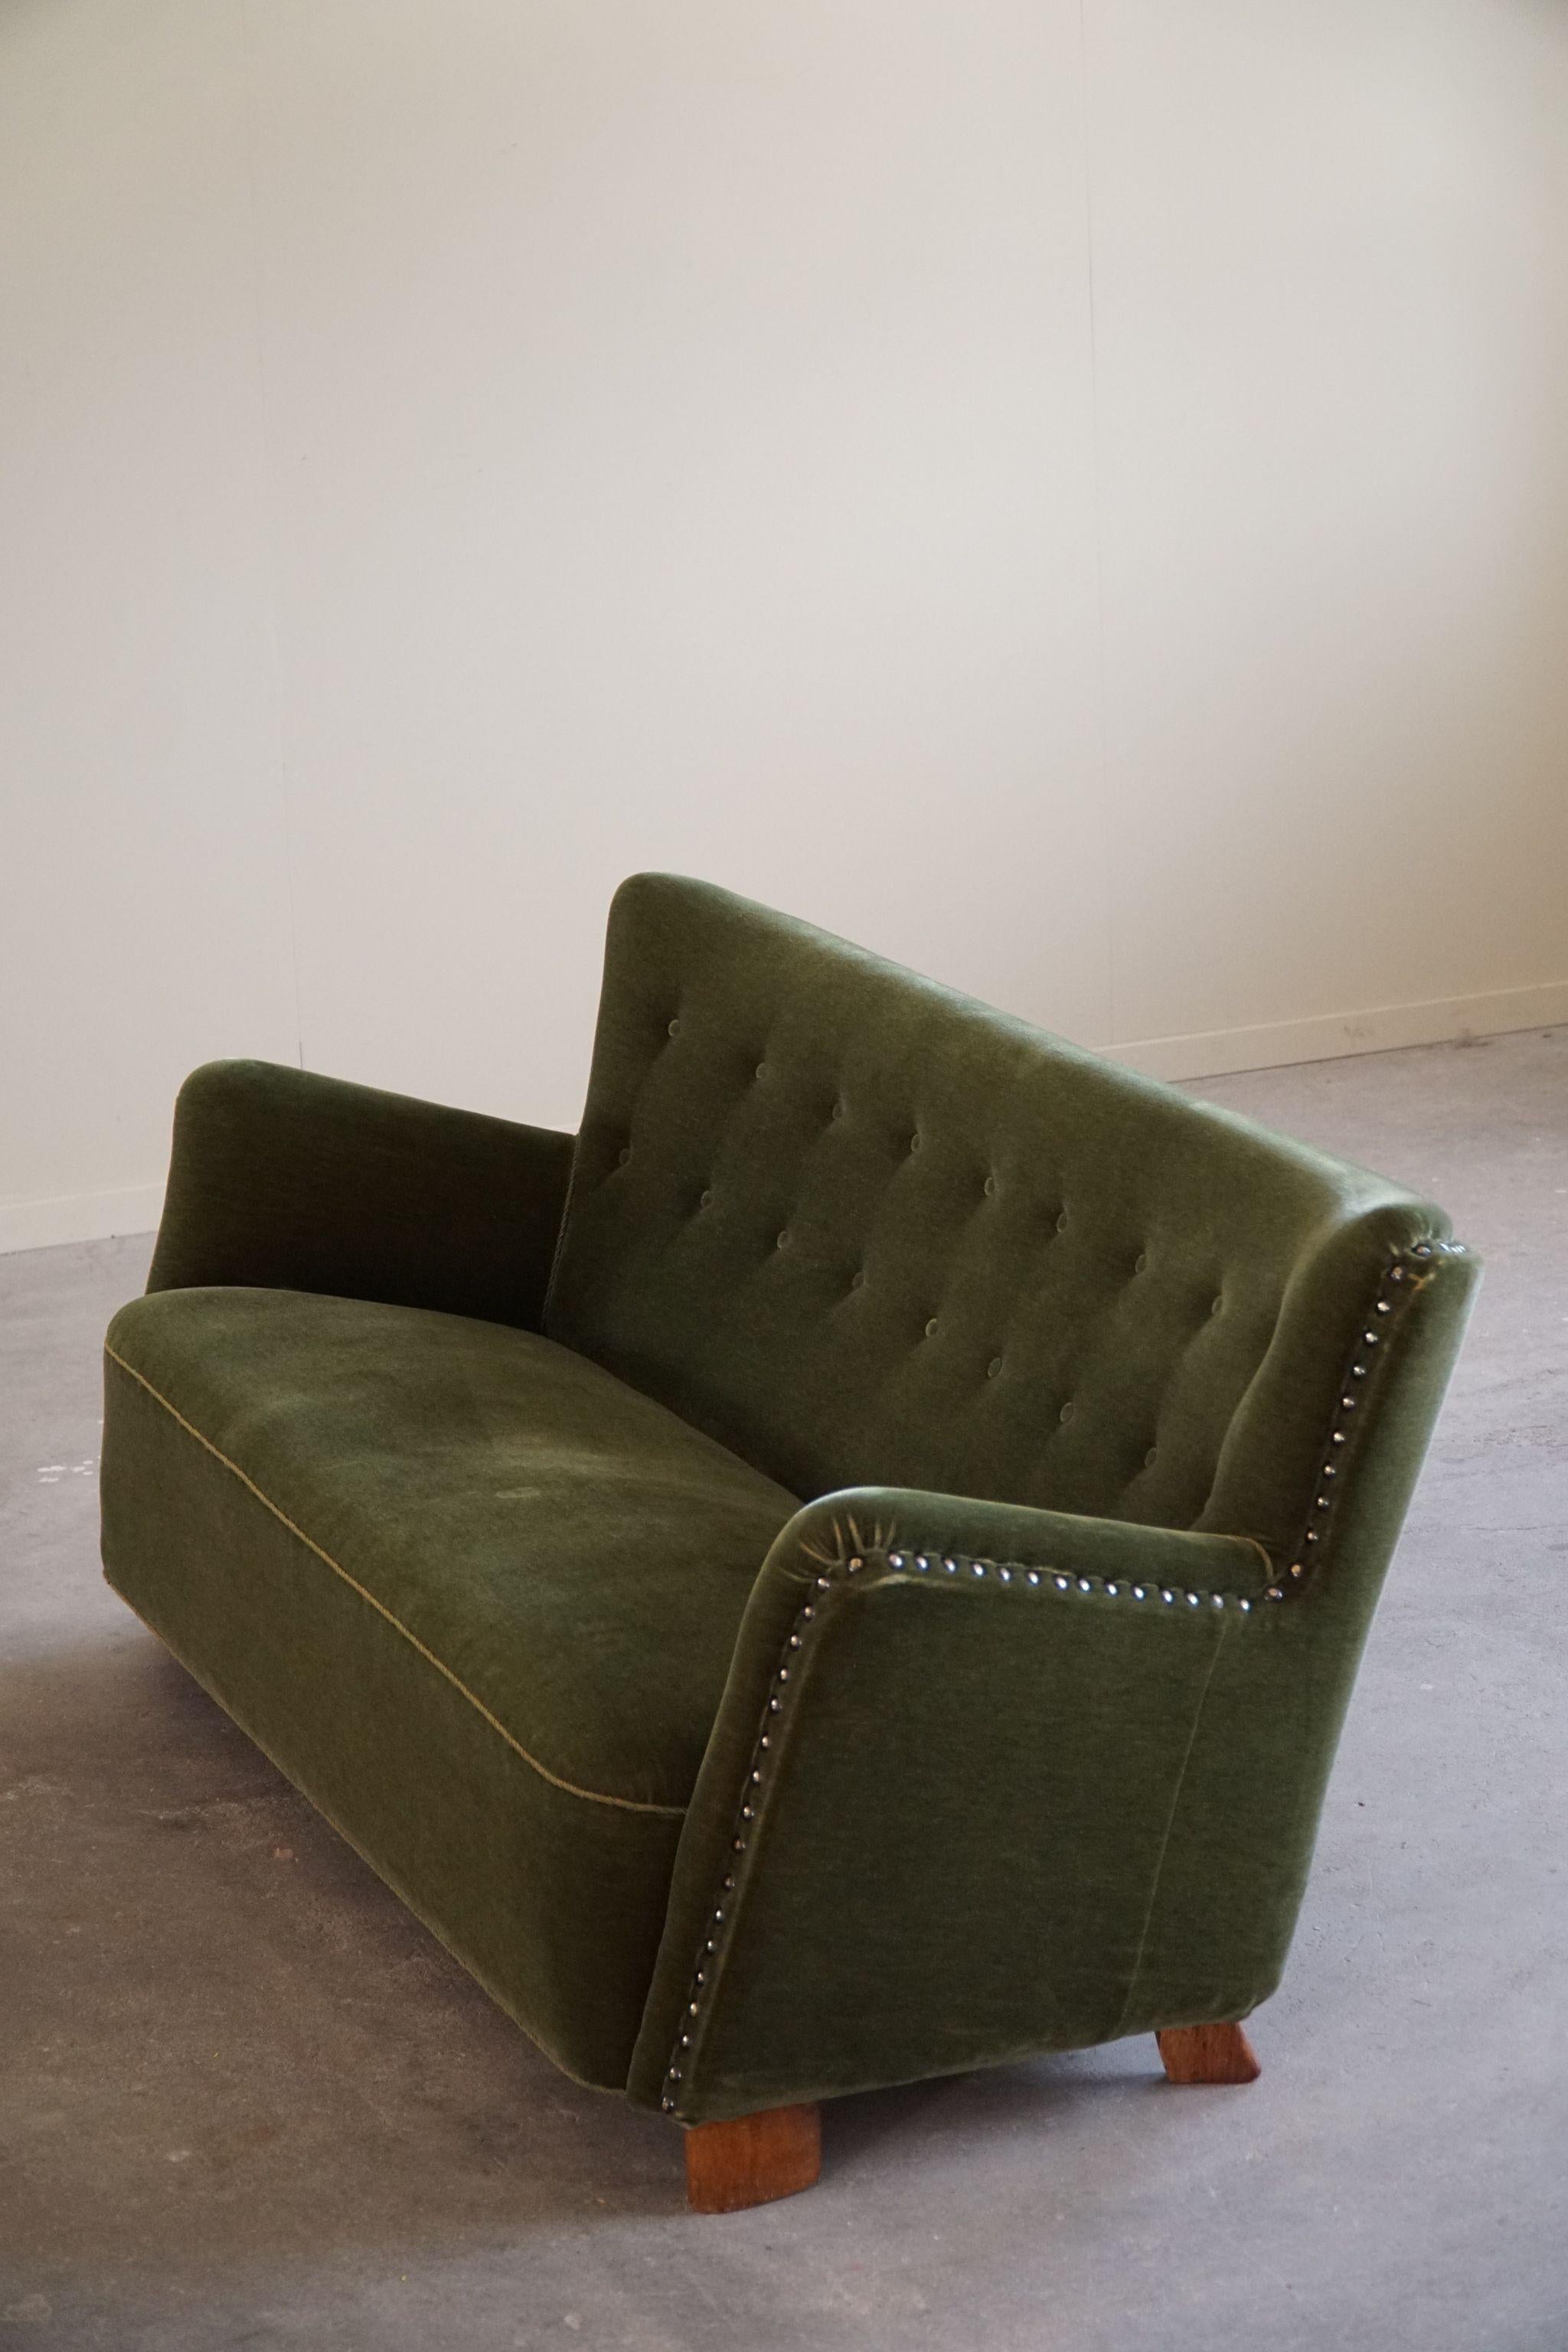 Ce magnifique canapé trois places en velours vert d'origine incarne le design danois Mid Century Modern des années 1940. Son revêtement en velours vert luxuriant respire le luxe et le confort, tandis que les pieds en chêne assurent la stabilité et